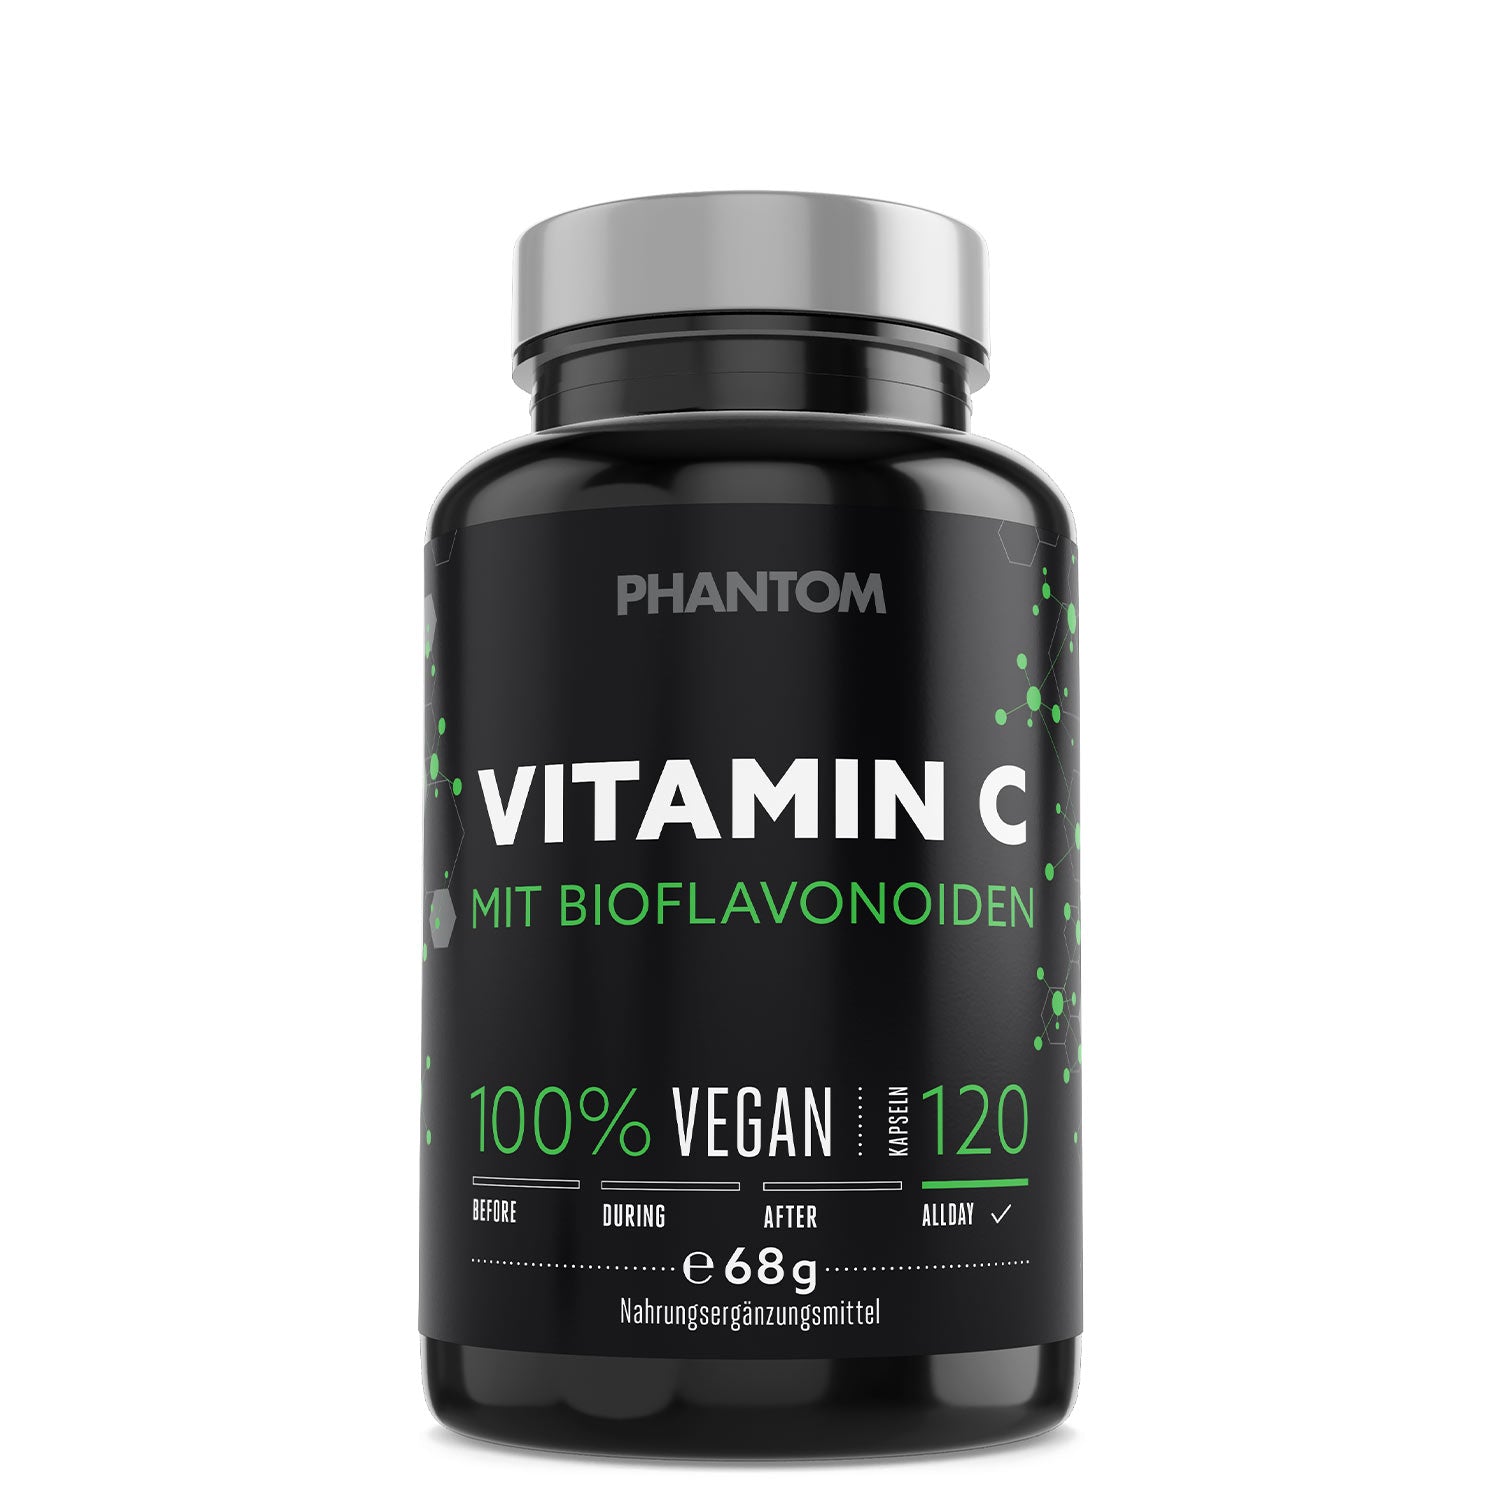 Phantom Vitamin C für ein besseres Immunsystem im Kampfsport.